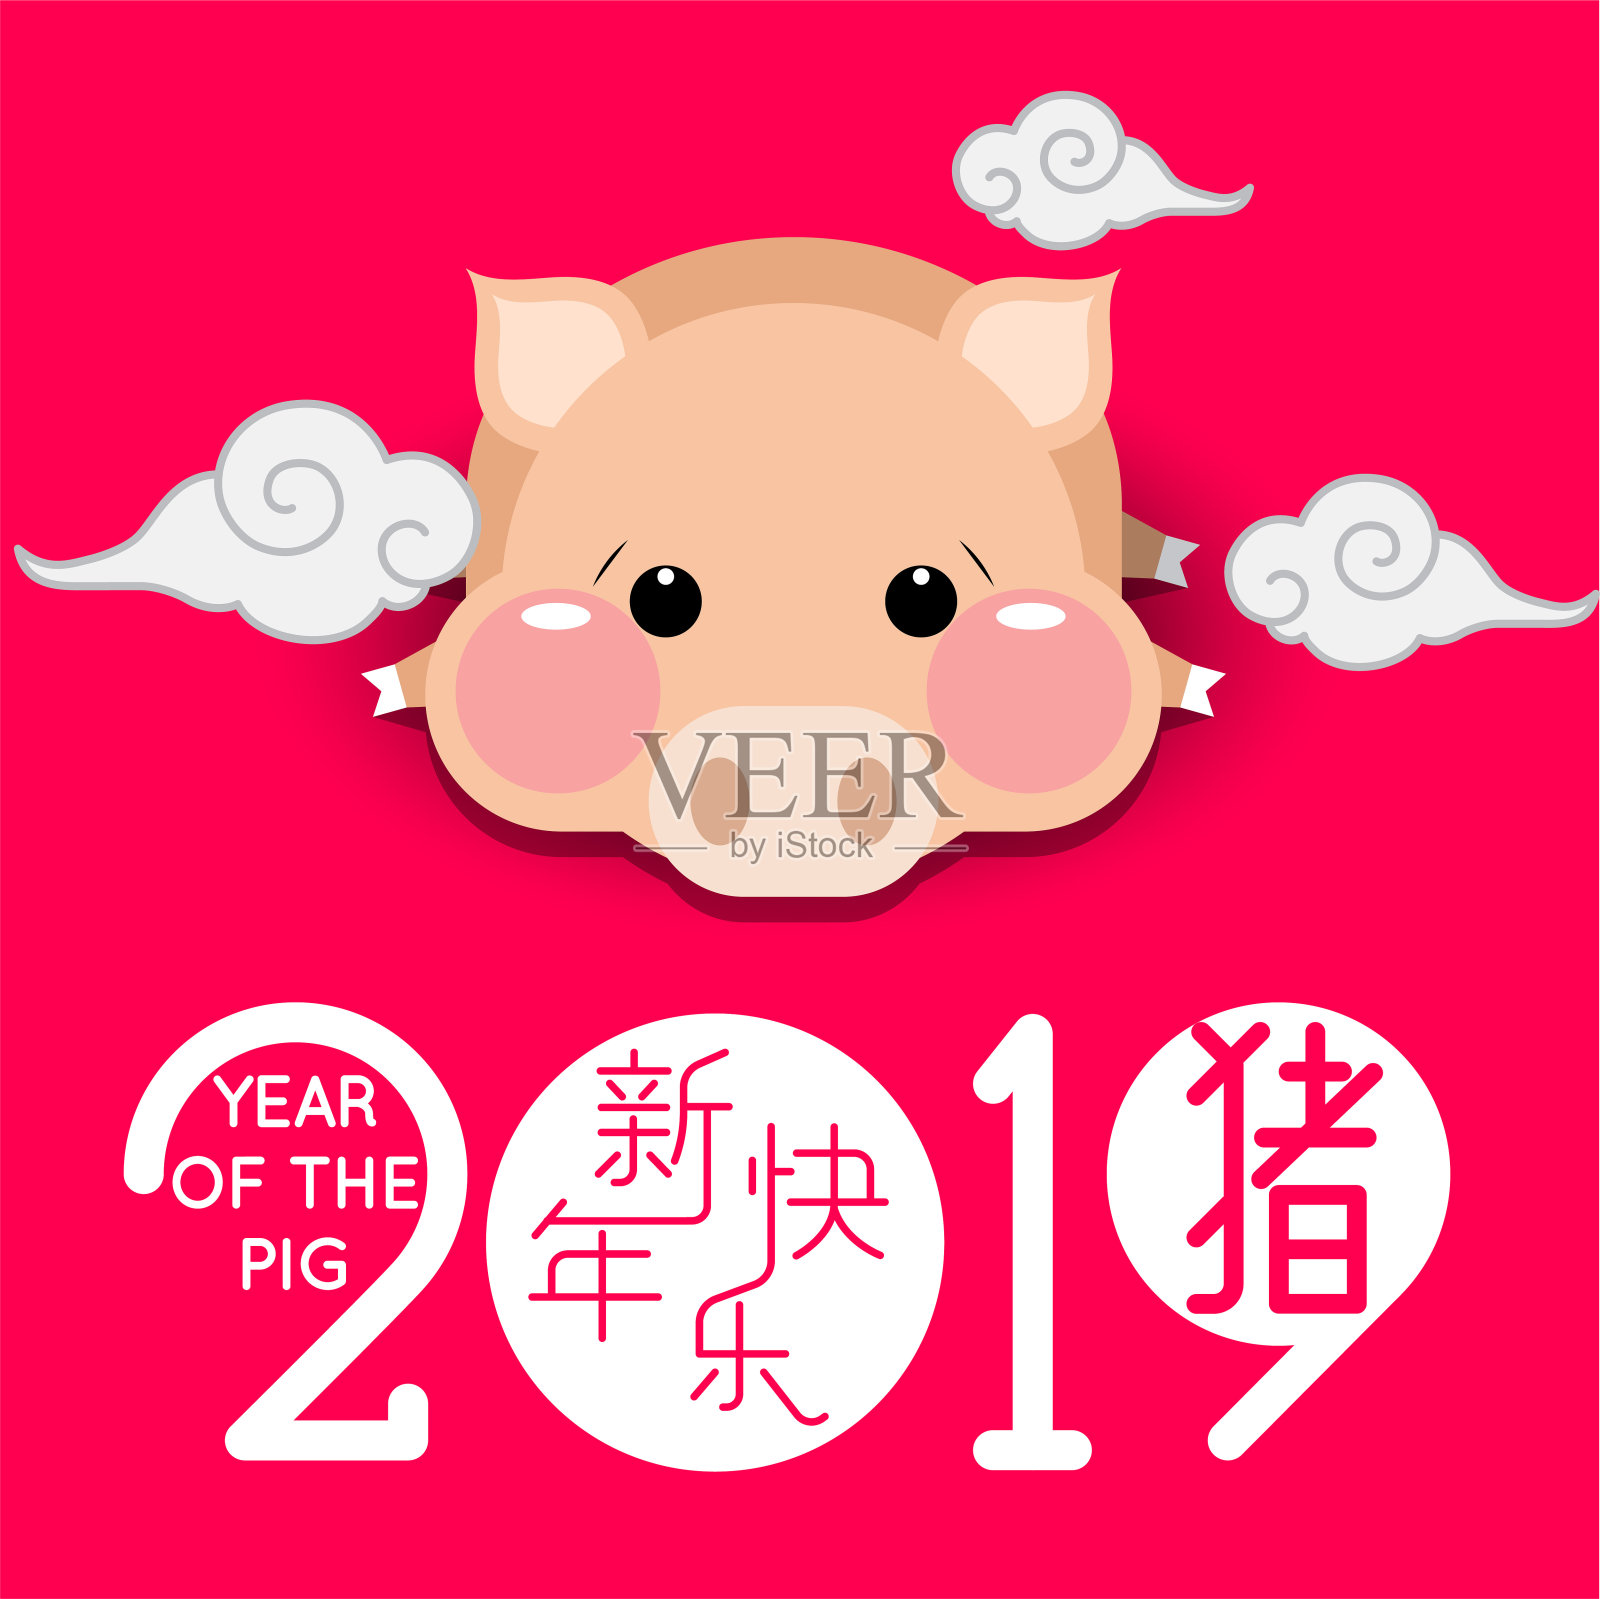 2019年春节快乐，用可爱的卡通小猪祝你猪年快乐。中文翻译:春节快乐，猪年快乐。设计模板素材